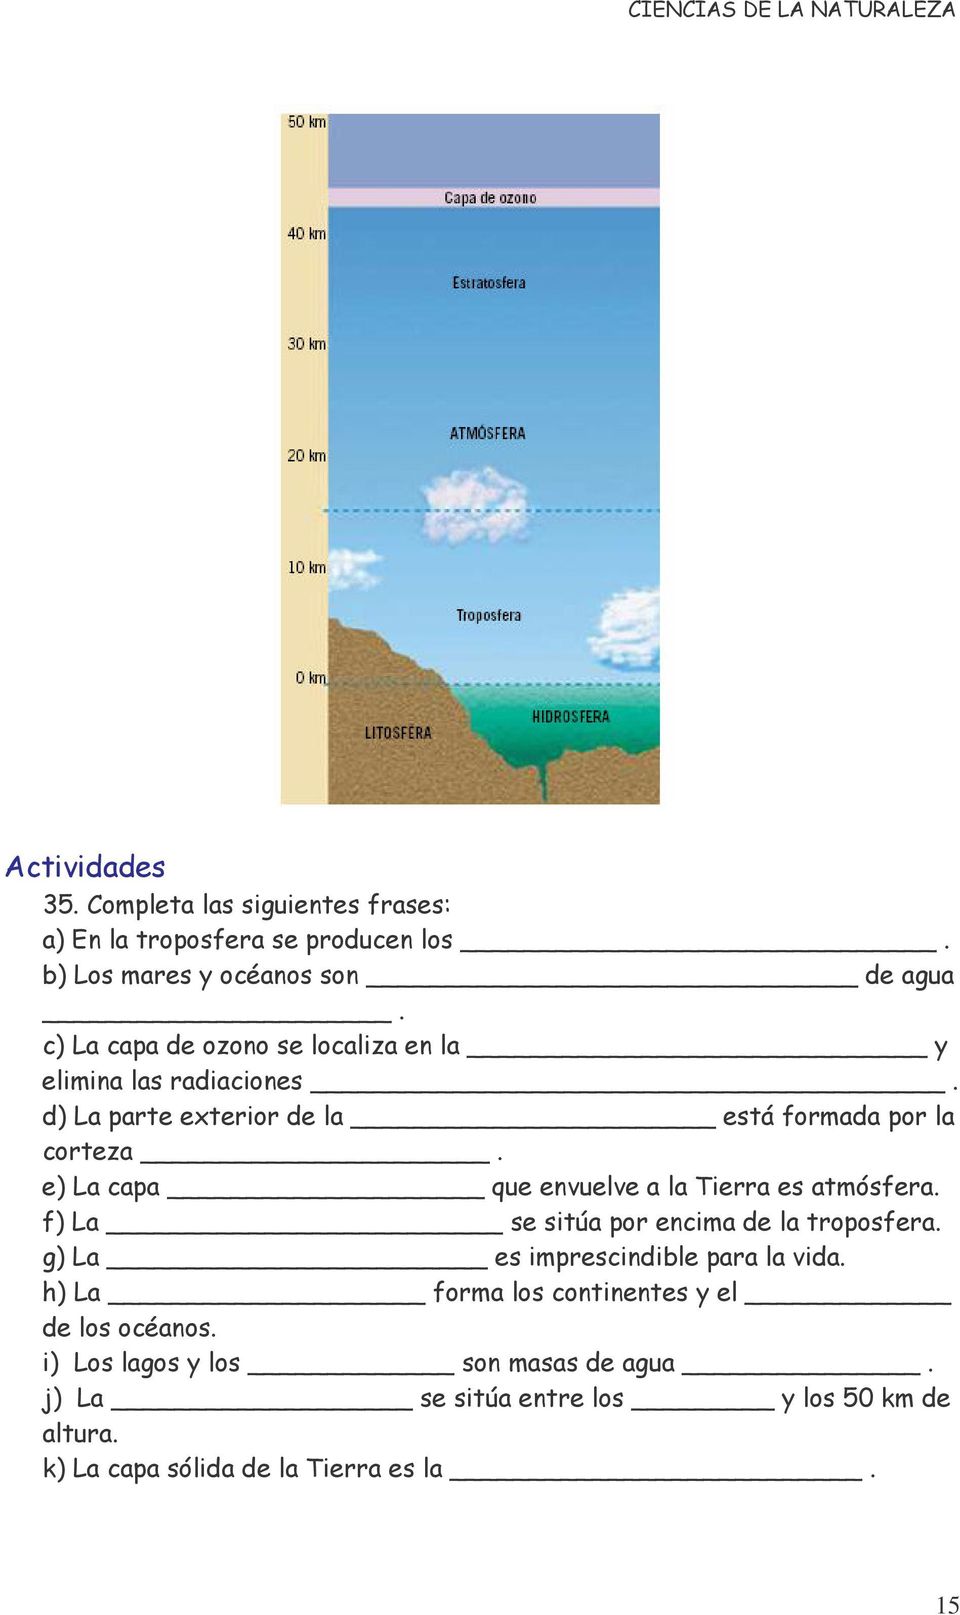 e) La capa que envuelve a la Tierra es atmósfera. f) La se sitúa por encima de la troposfera. g) La es imprescindible para la vida.